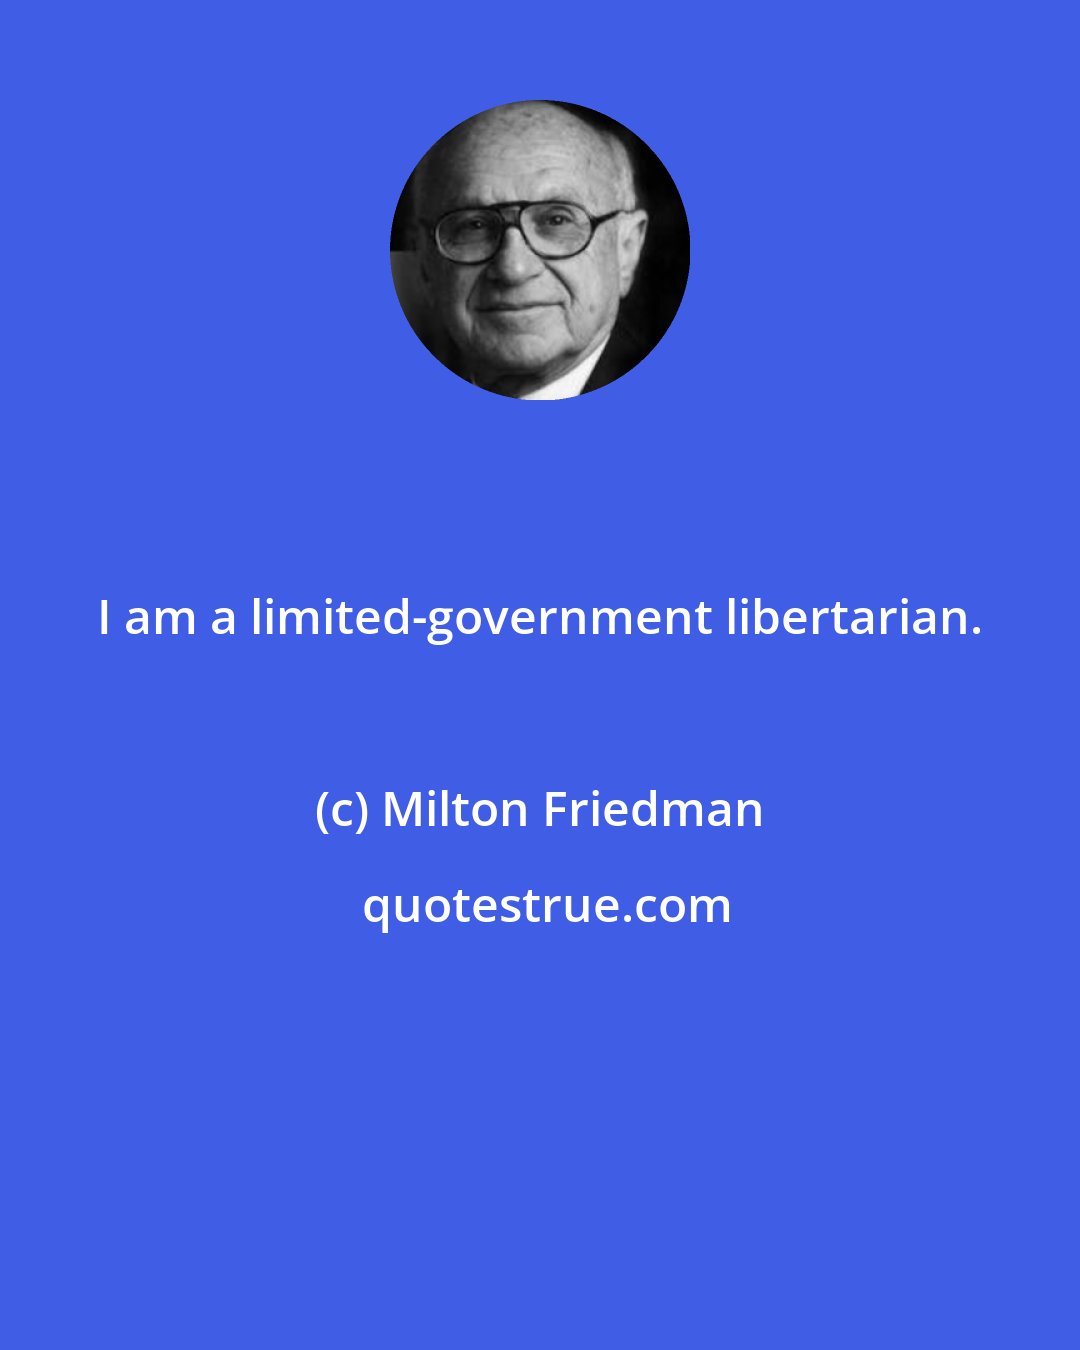 Milton Friedman: I am a limited-government libertarian.